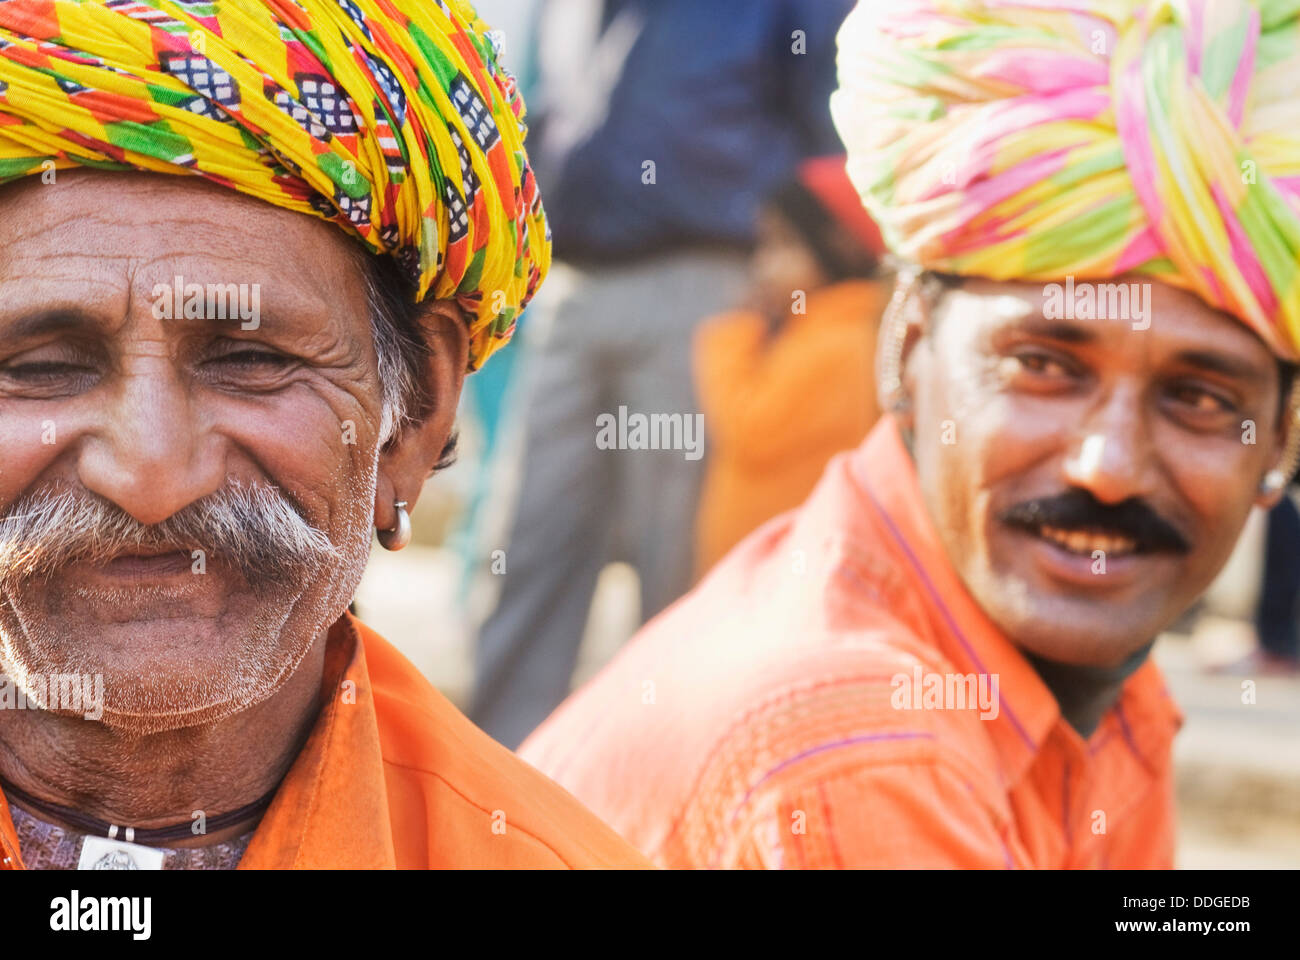 Two men in traditional Rajasthani dress at Surajkund Mela, Faridabad, Haryana, India Stock Photo